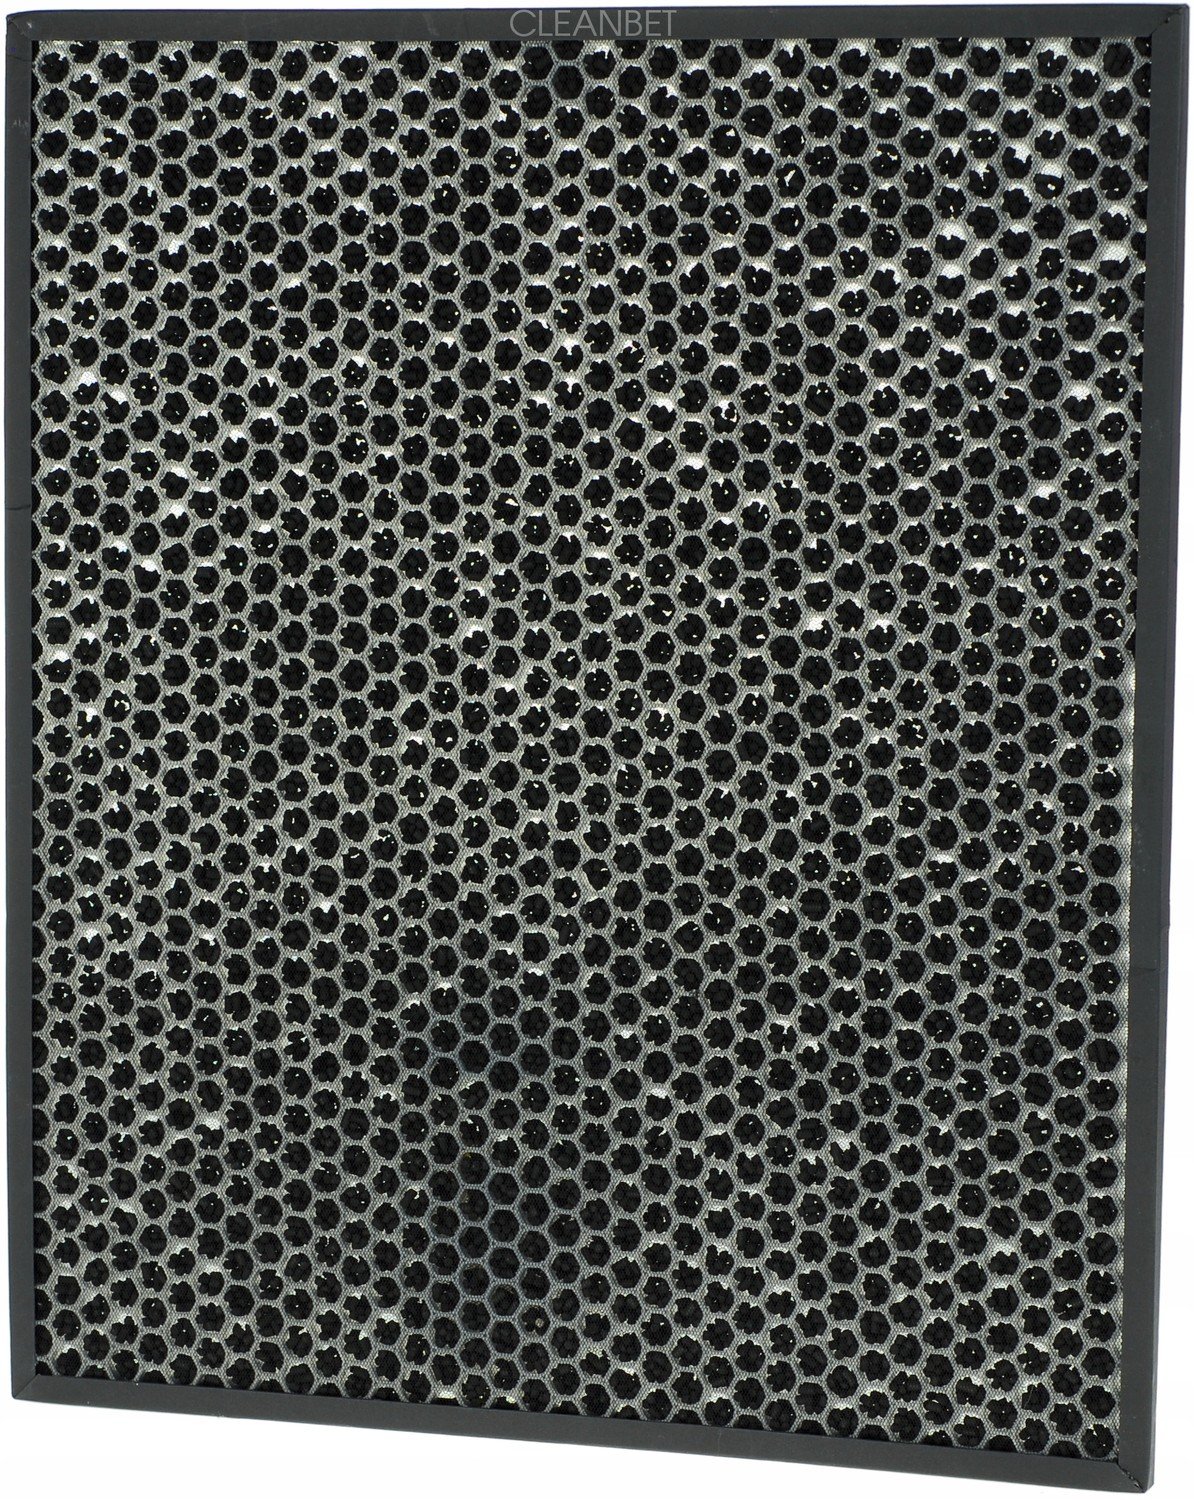 Uhlíkový filtr pro čističku Electrolux EAP450